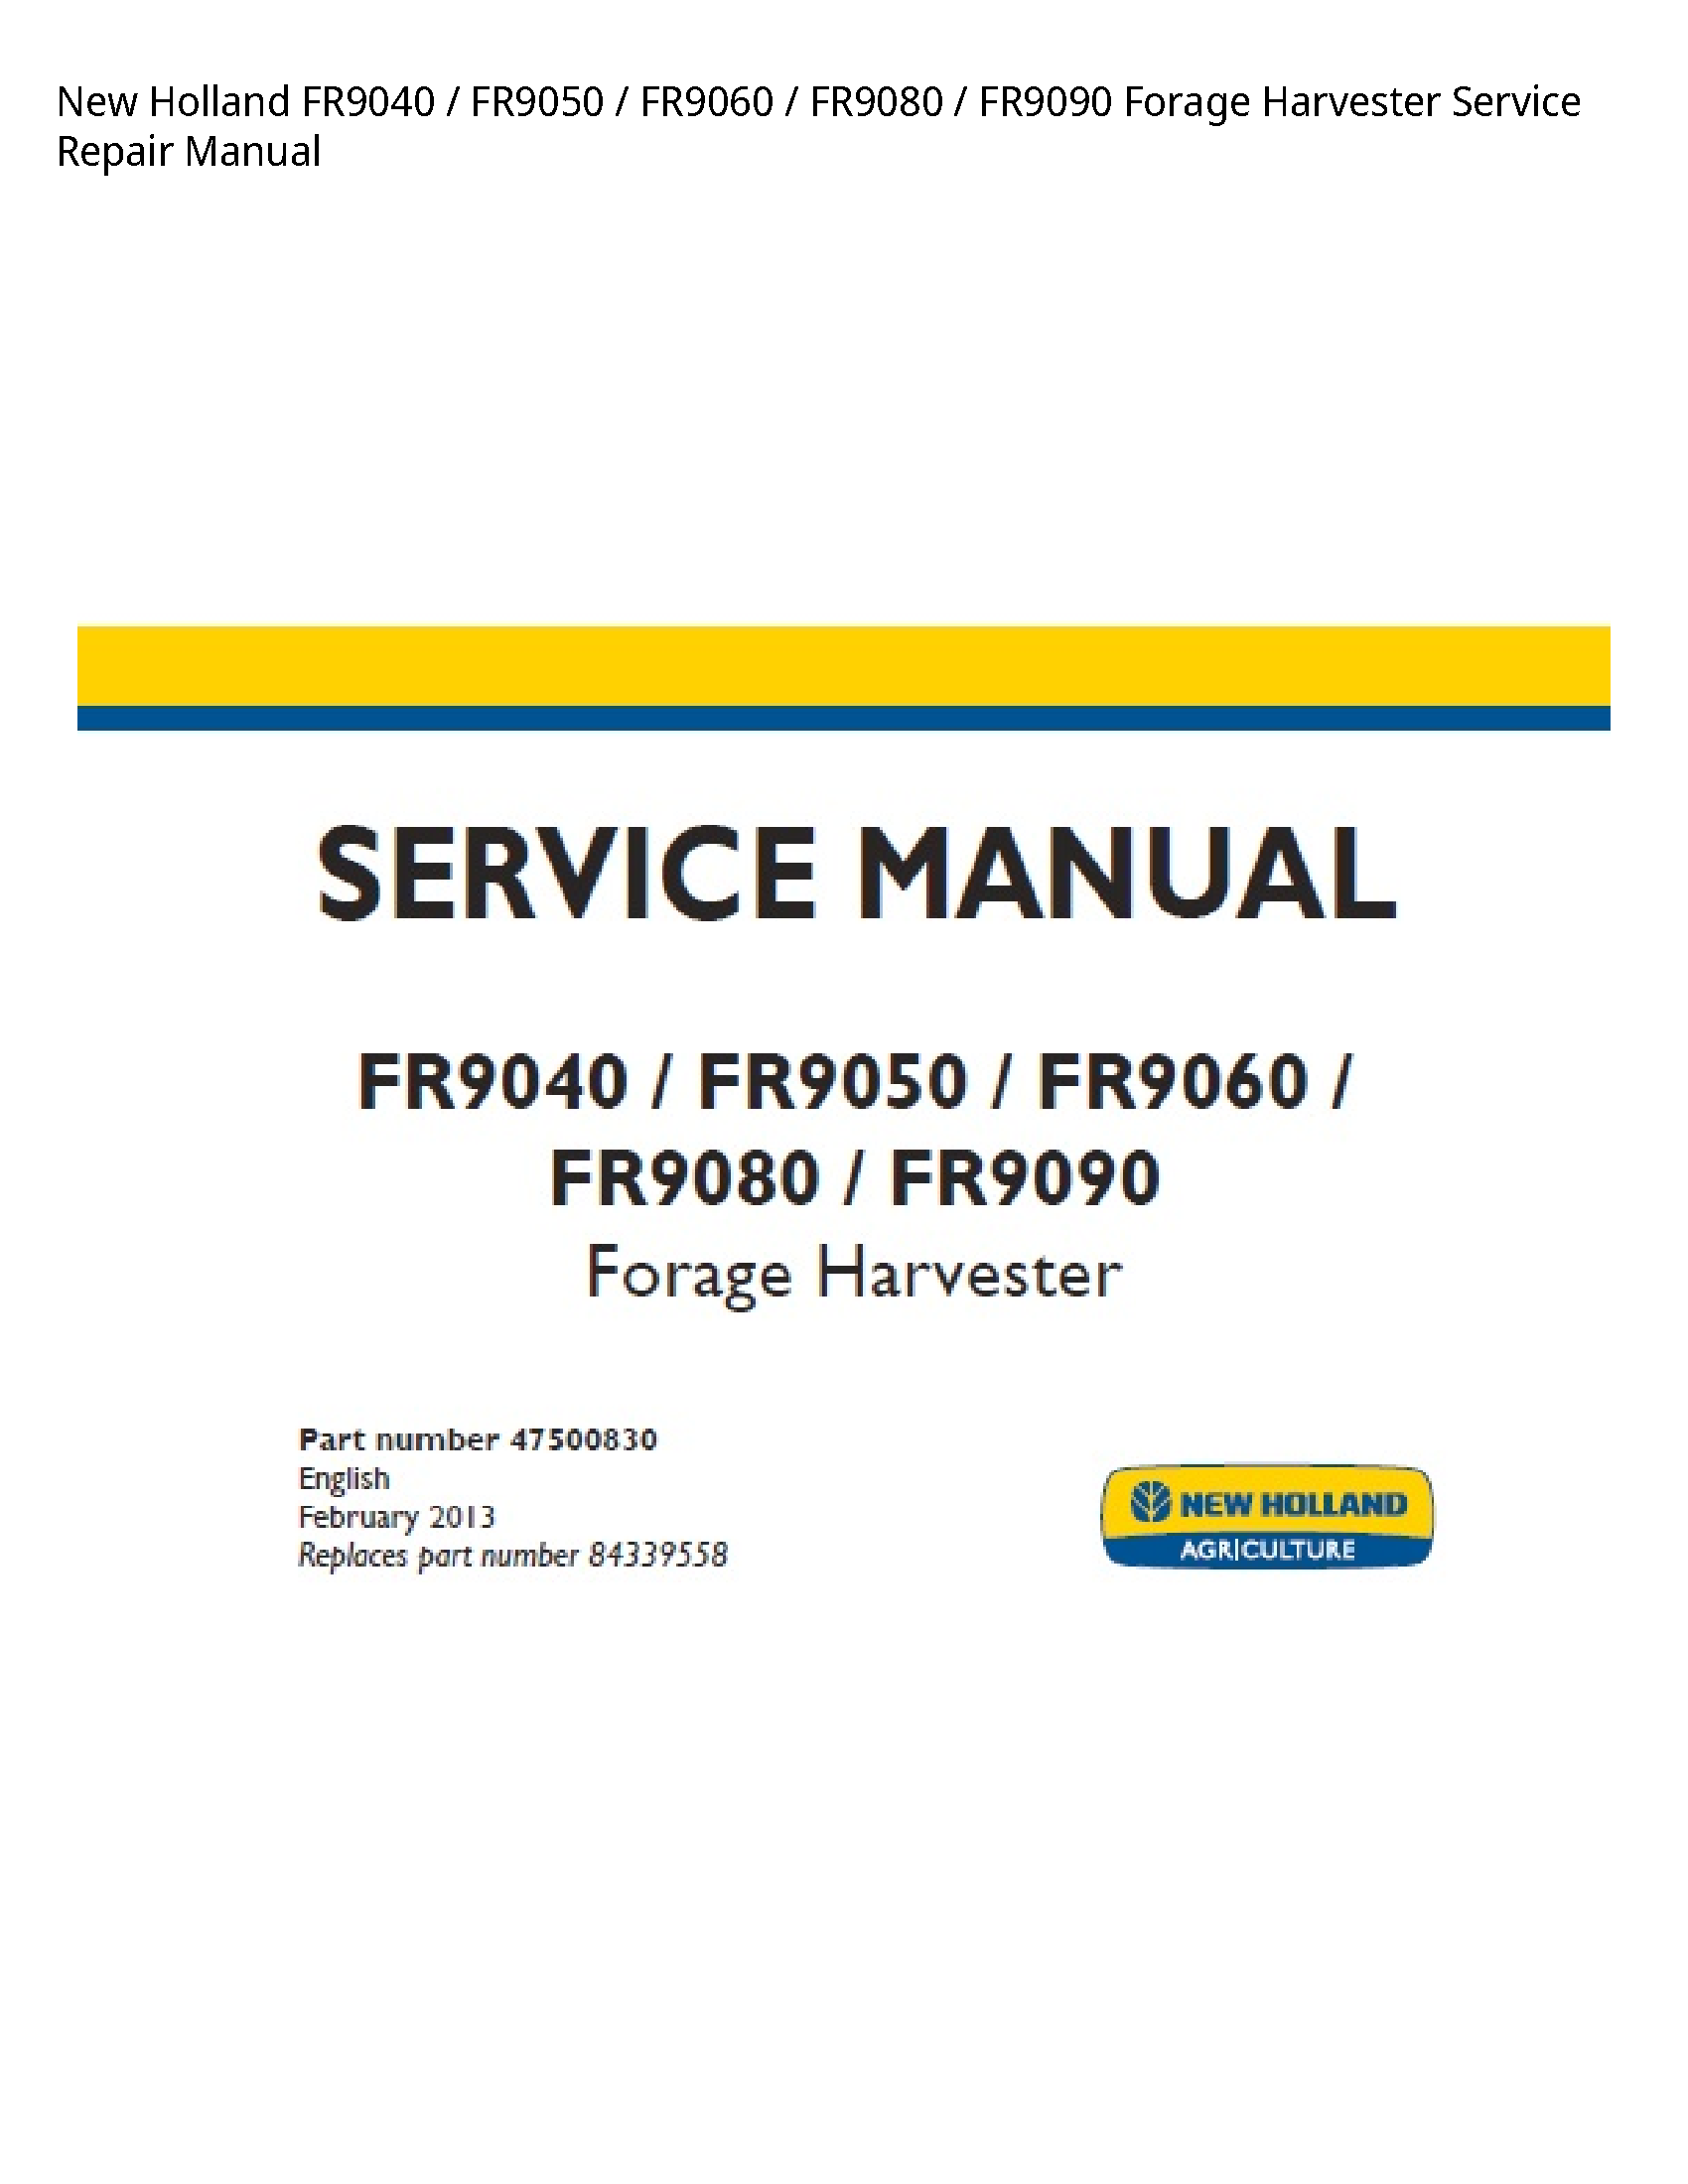 New Holland FR9040 Forage Harvester manual